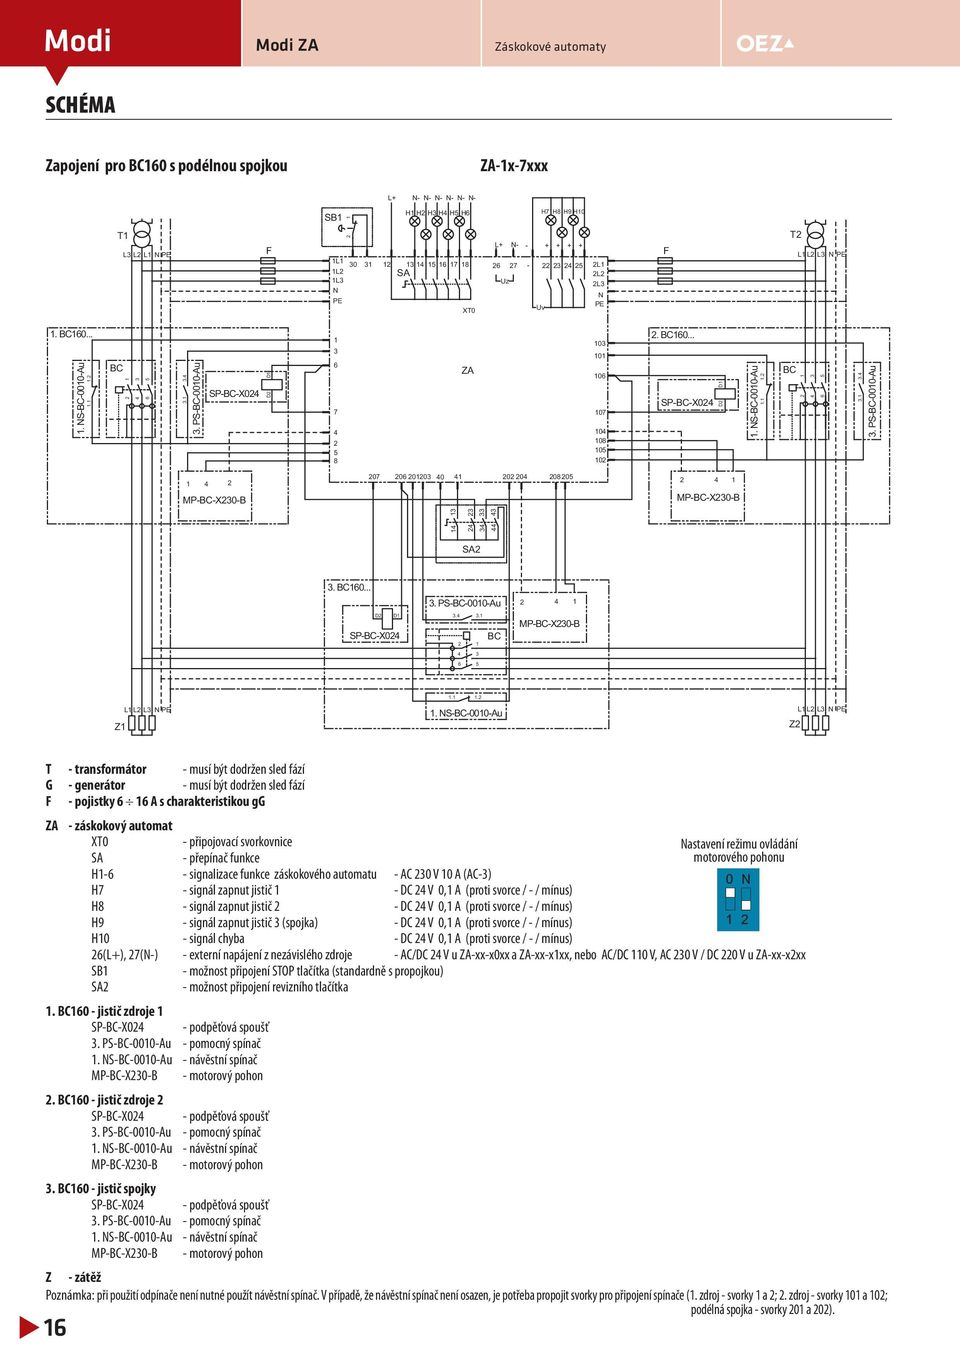 L L L N PE Z NS-BC-000-Au L L L N PE Z T - transformátor - musí být dodržen sled fází G - generátor - musí být dodržen sled fází F - pojistky A s charakteristikou gg ZA - záskokový automat XT0 -